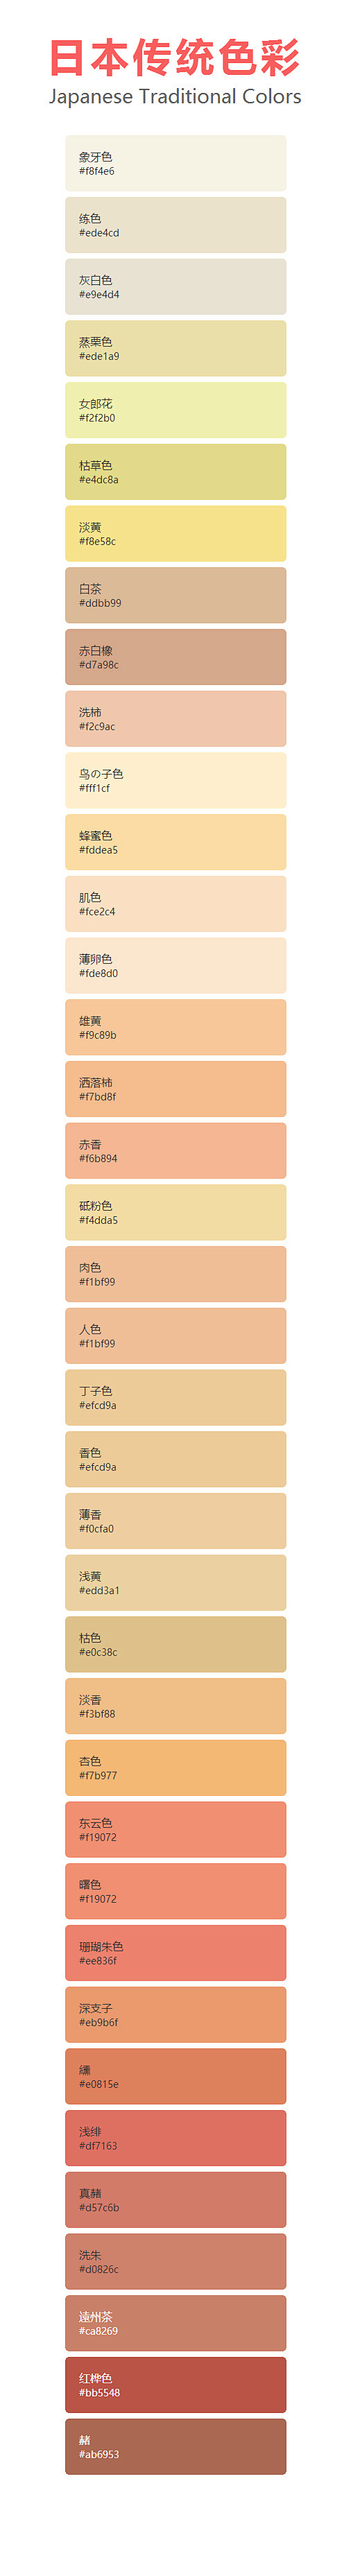 日本传统色彩01